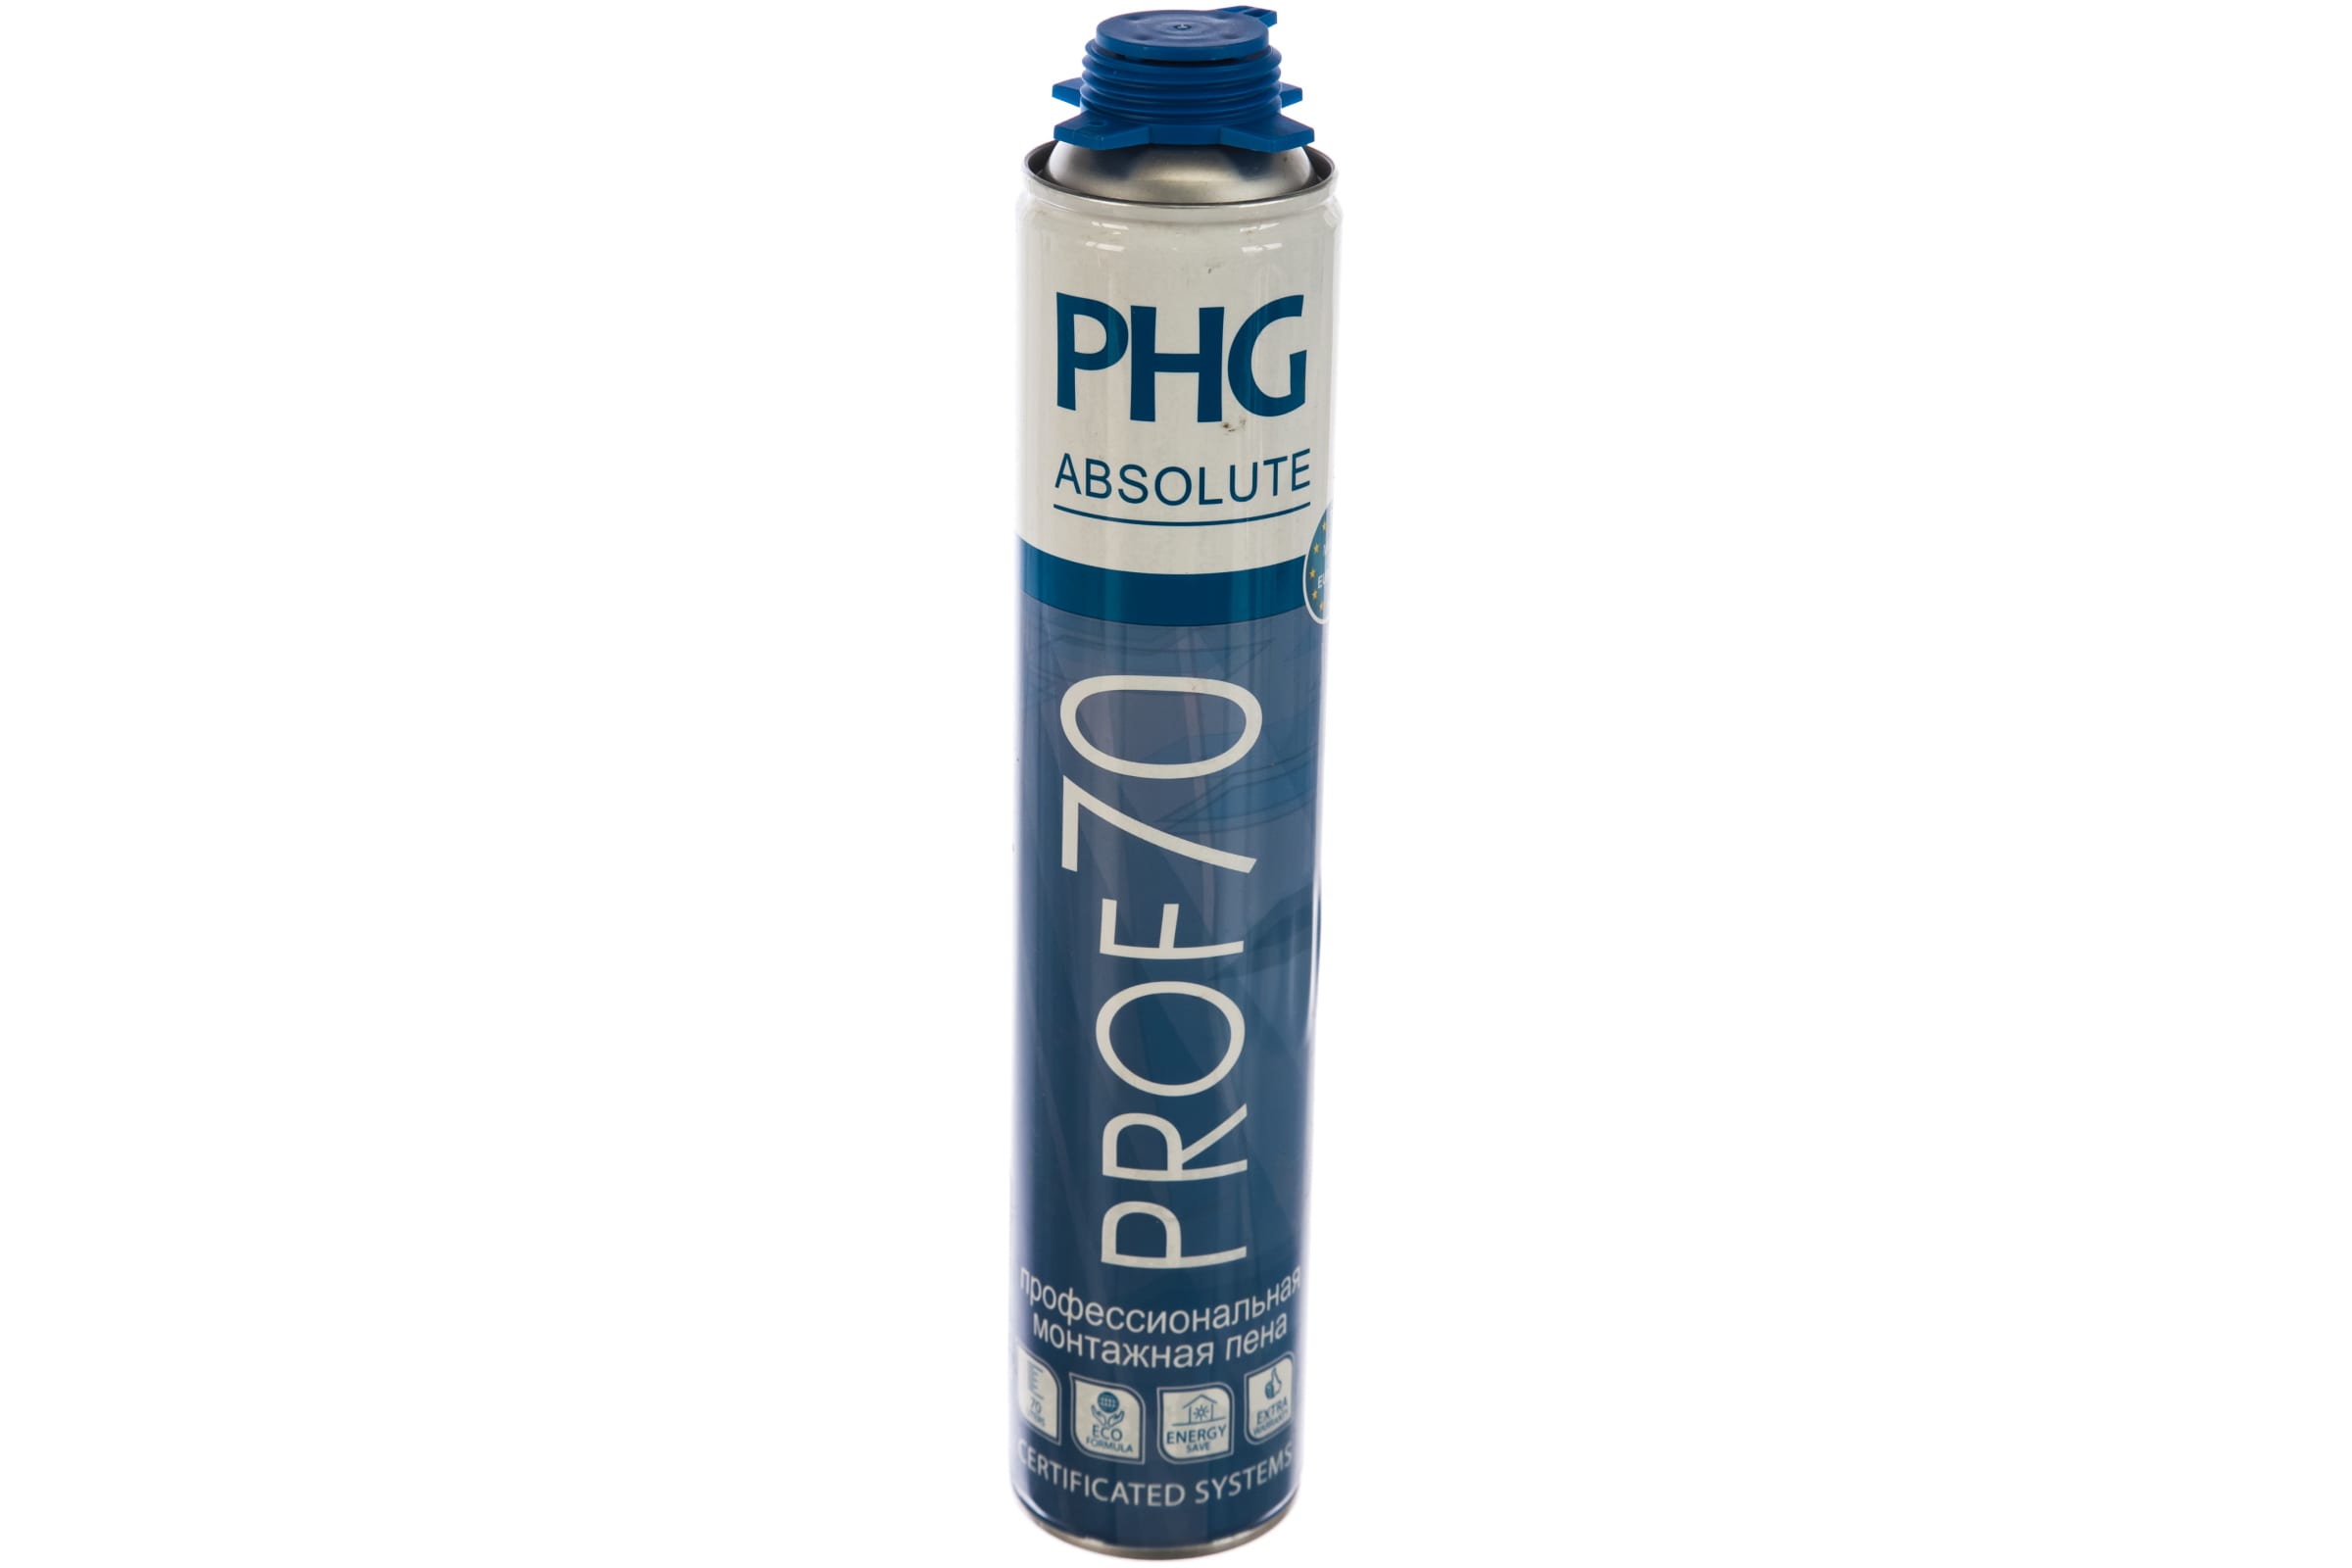 PHG Absolute PROF 70 професииональная монтажная пена 70 литров 1000 ml 242419